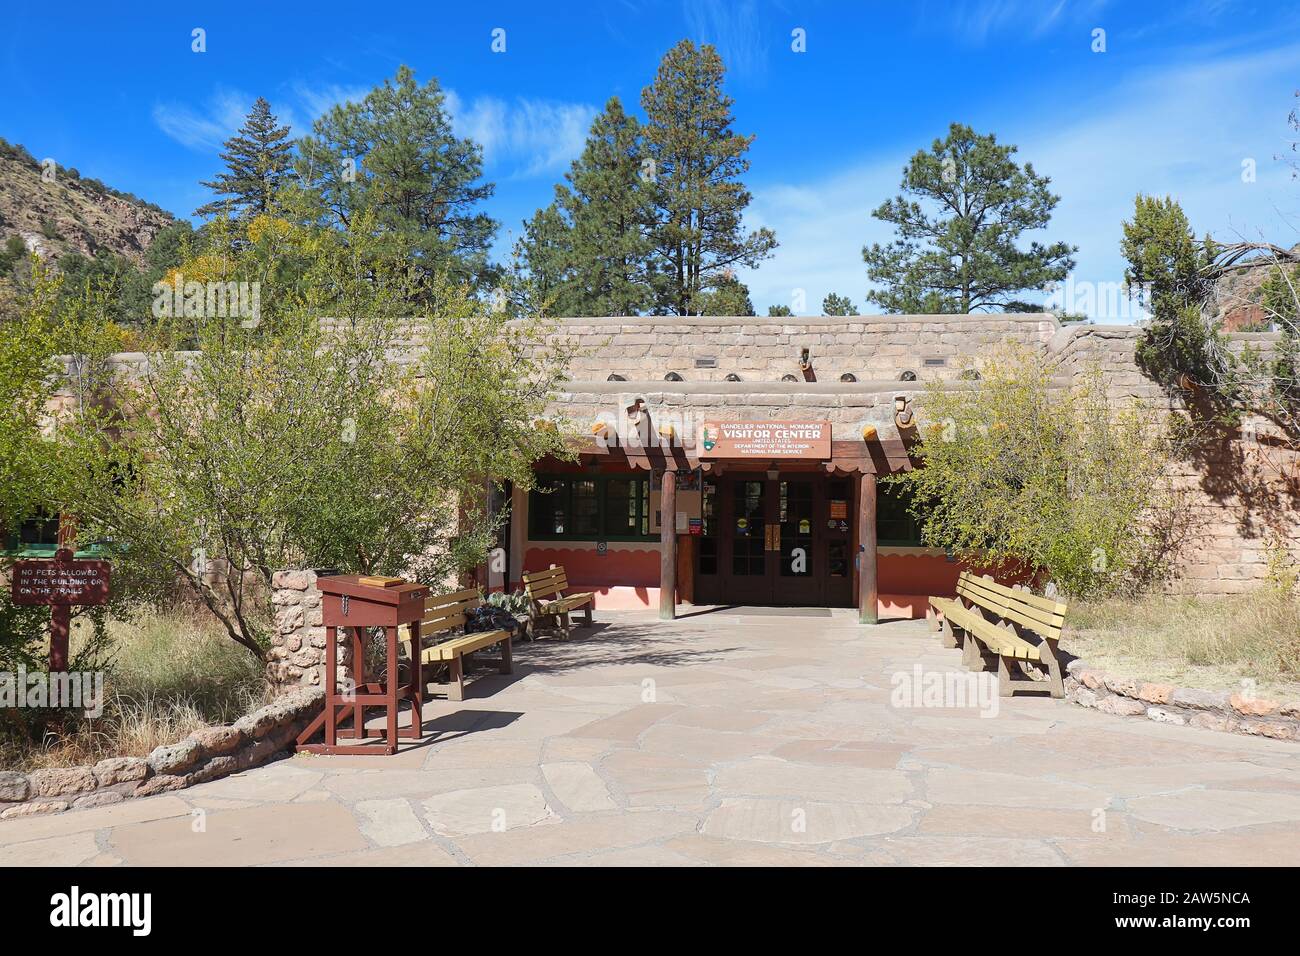 Das Bandelier National Monument liegt in der Nähe von Los Alamos in den Grafschaften Sandoval und Los Alamos, New Mexico, und enthält Pueblo-Ruinen der angestammten Häuser von na Stockfoto